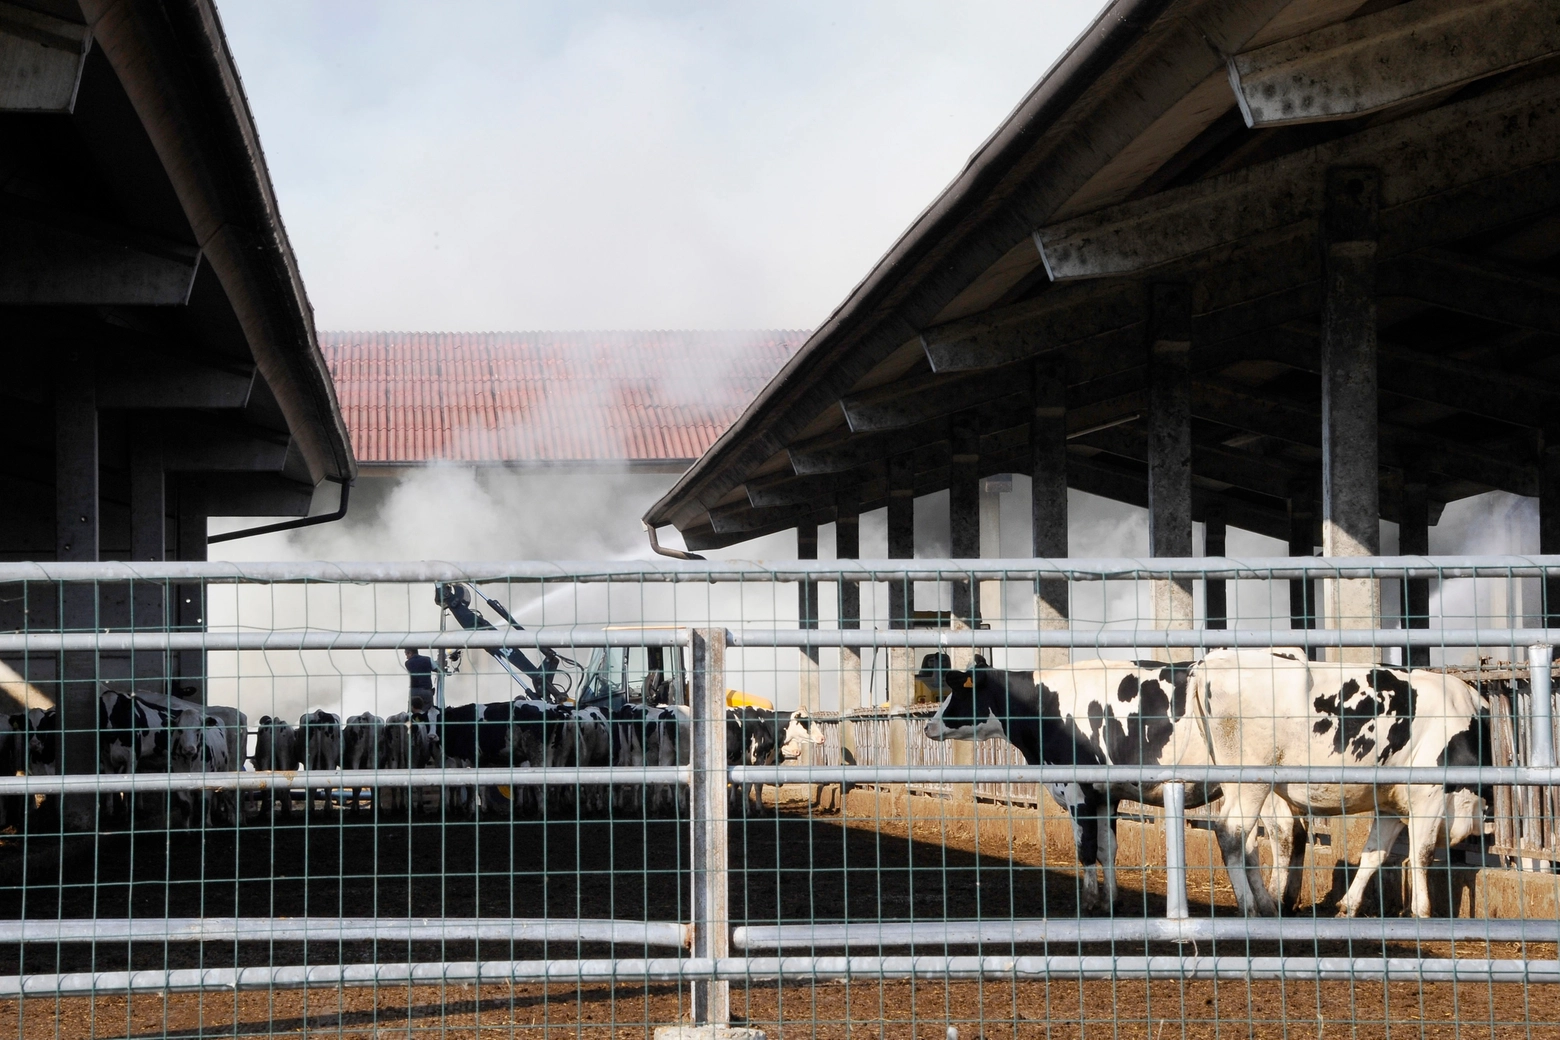 L'incendio nell'azienda agricola Cossa a Buccinasco